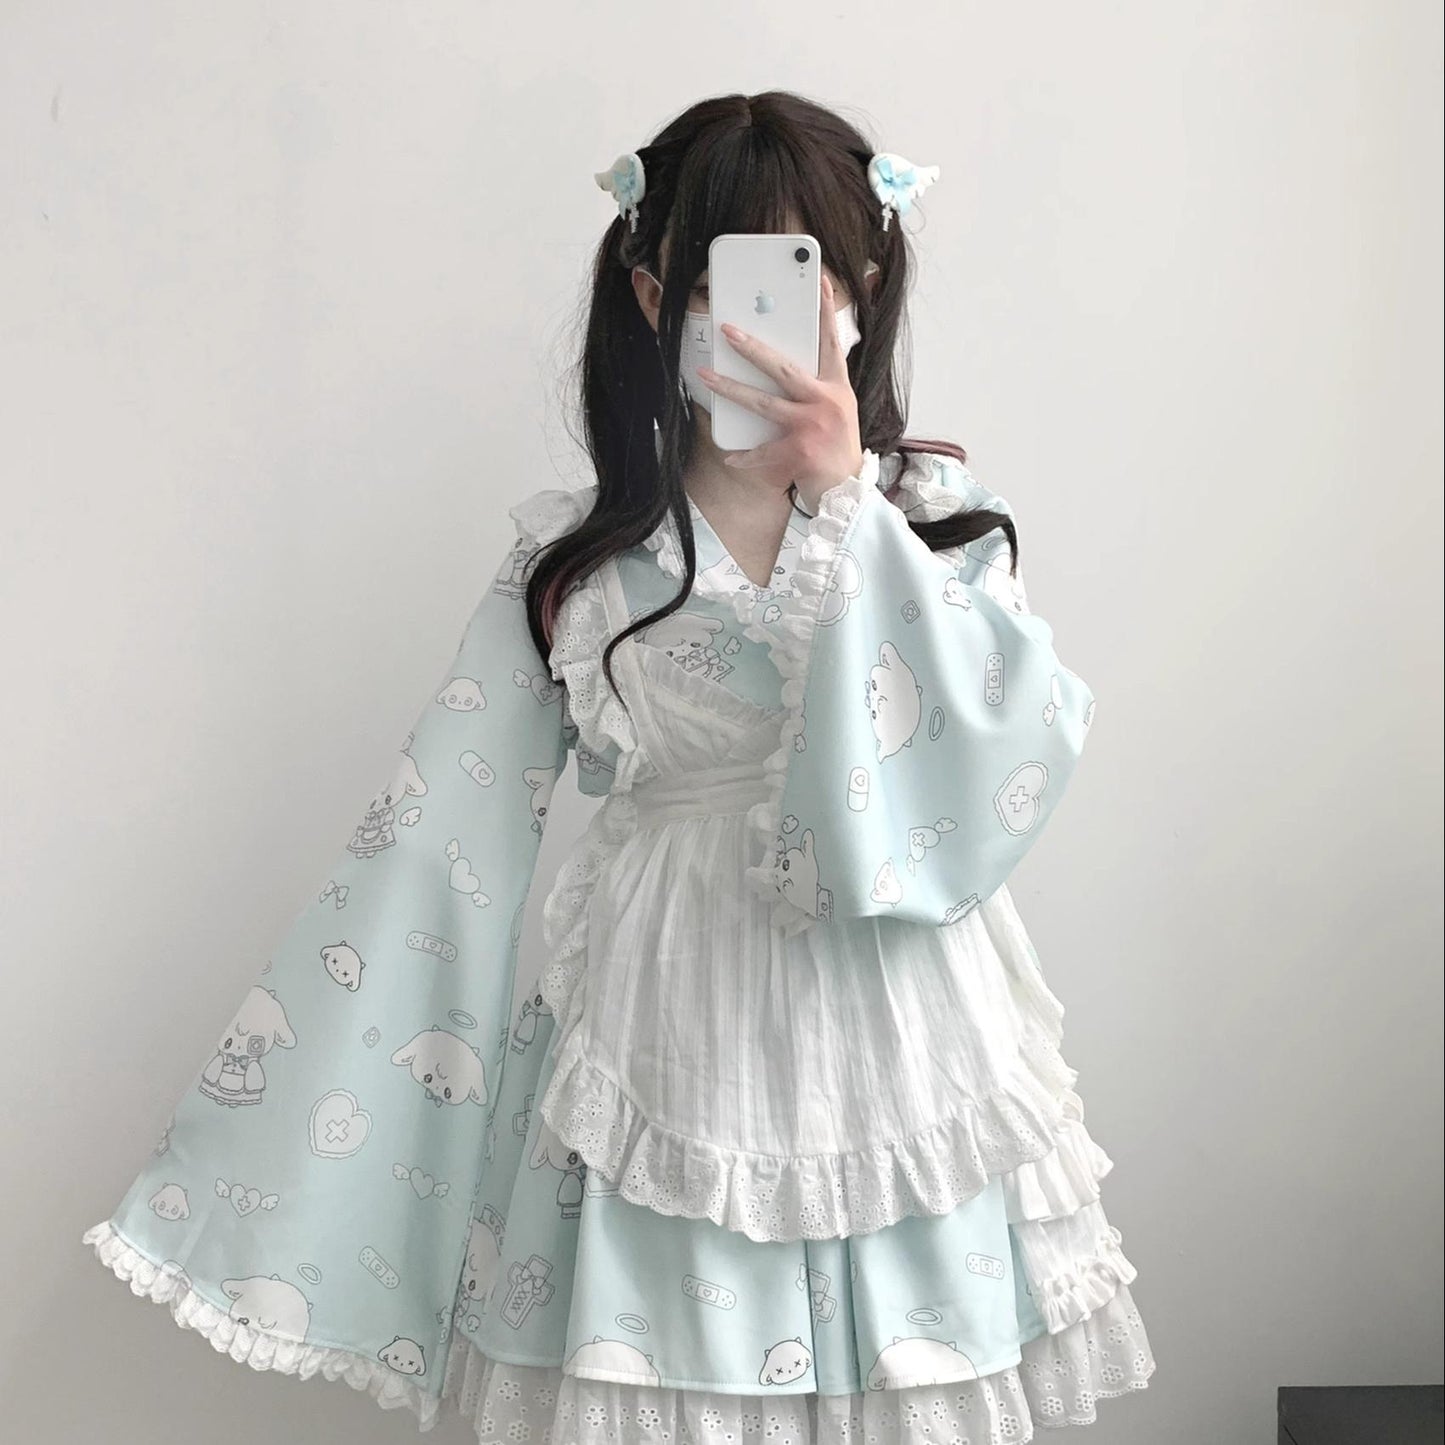 Tenshi Kaiwai Patchwork Skirt Kimono Top White Apron Three-Piece Set 36786:536838